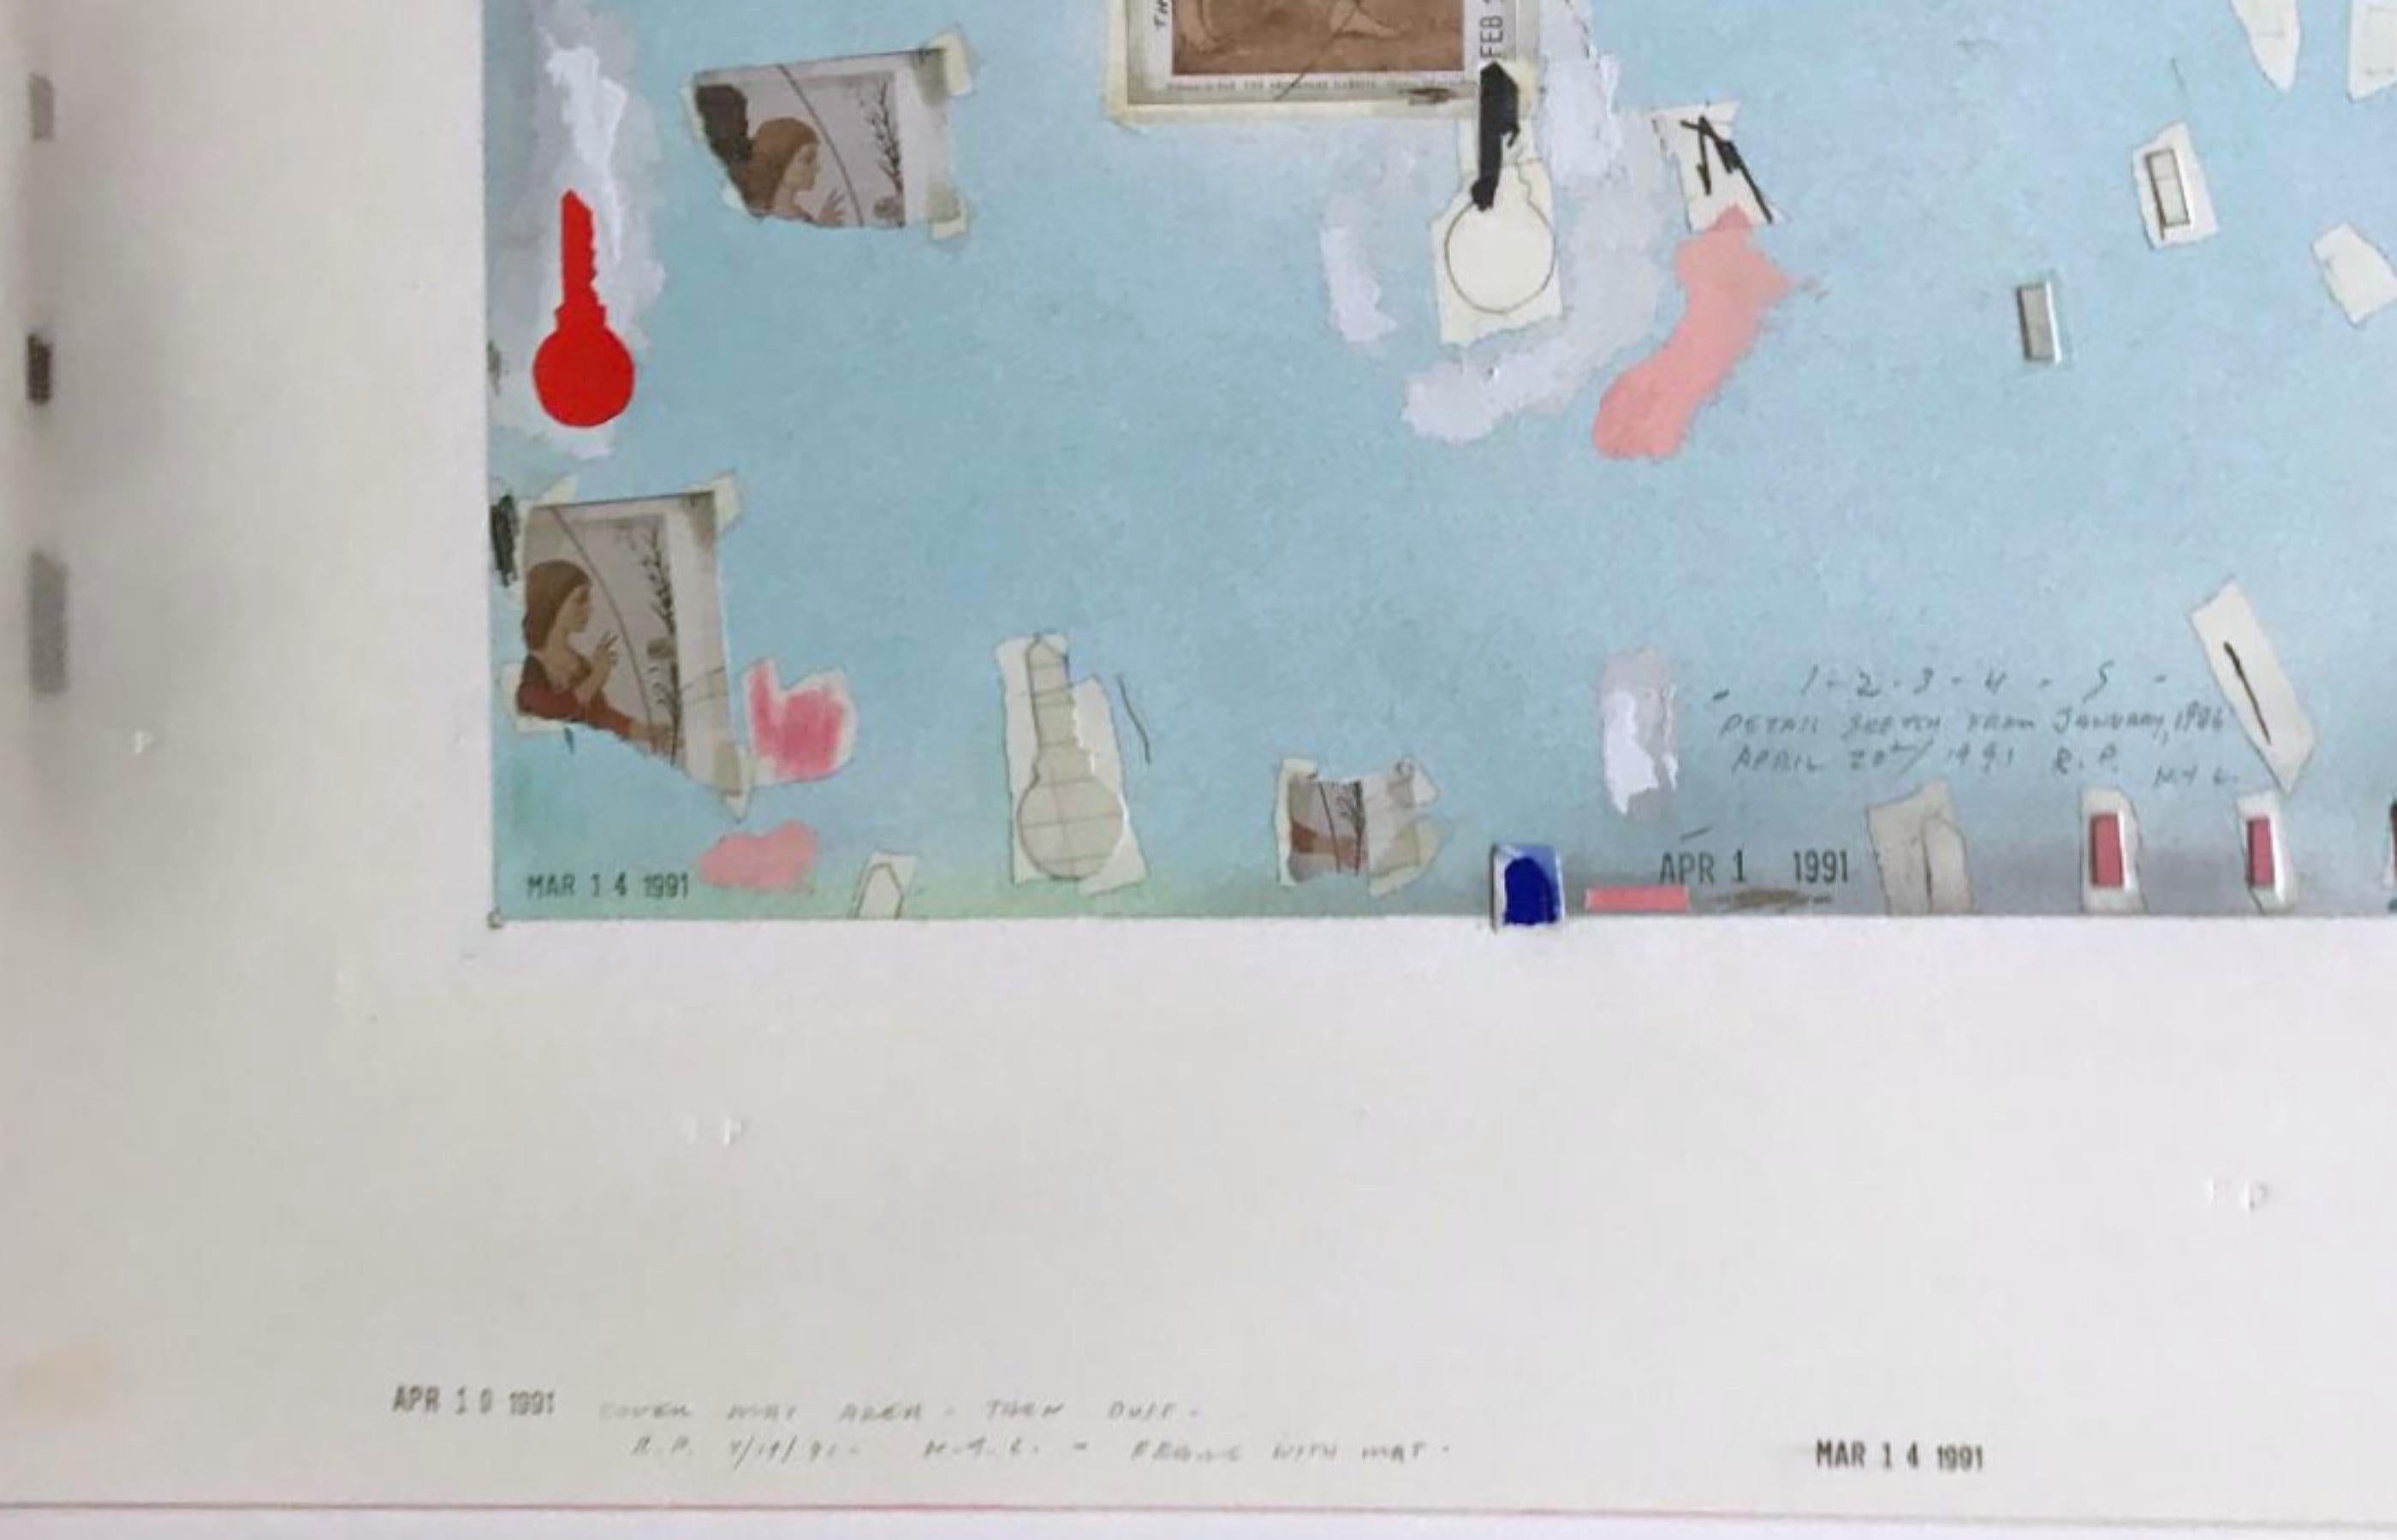 Robert Petersen
Detail Skizze vom Januar 1986, 1991
Reine Pigmentcollage, Acrylmalerei und Zeichnung
Vom Künstler handsigniert, handsigniert, handinitialisiert, kommentiert, handschriftlich datiert und mit Datumsstempel versehen sowie vom Künstler